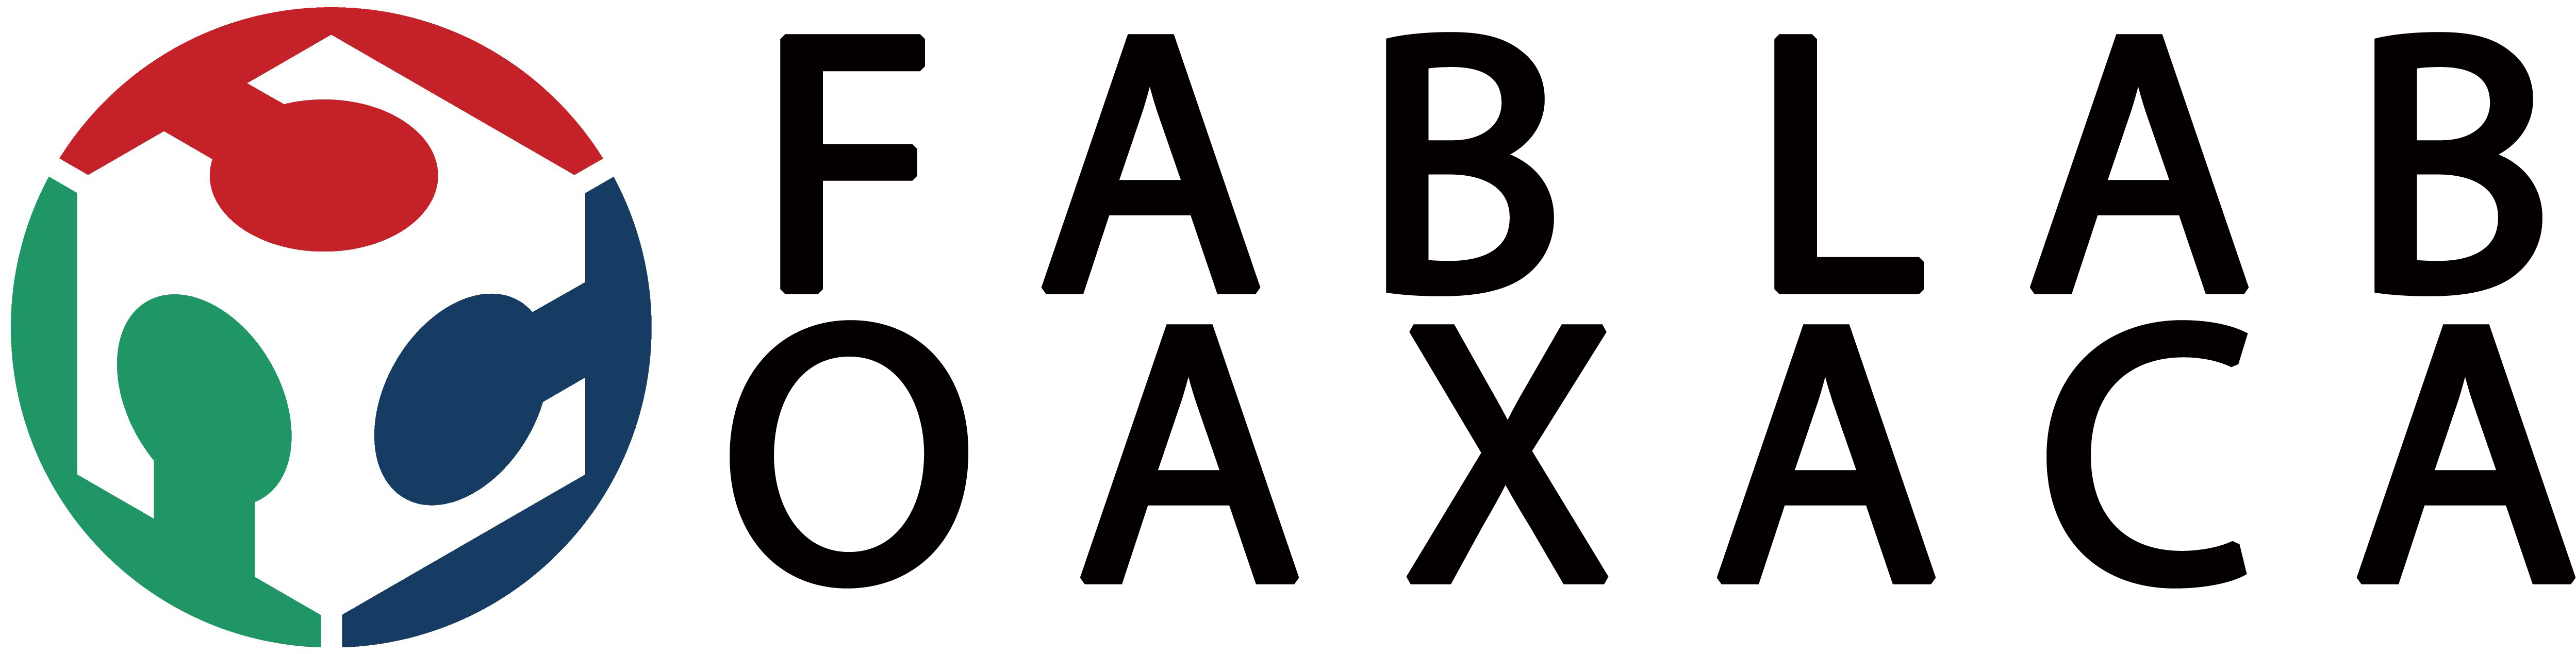 Fab Lab Oaxaca